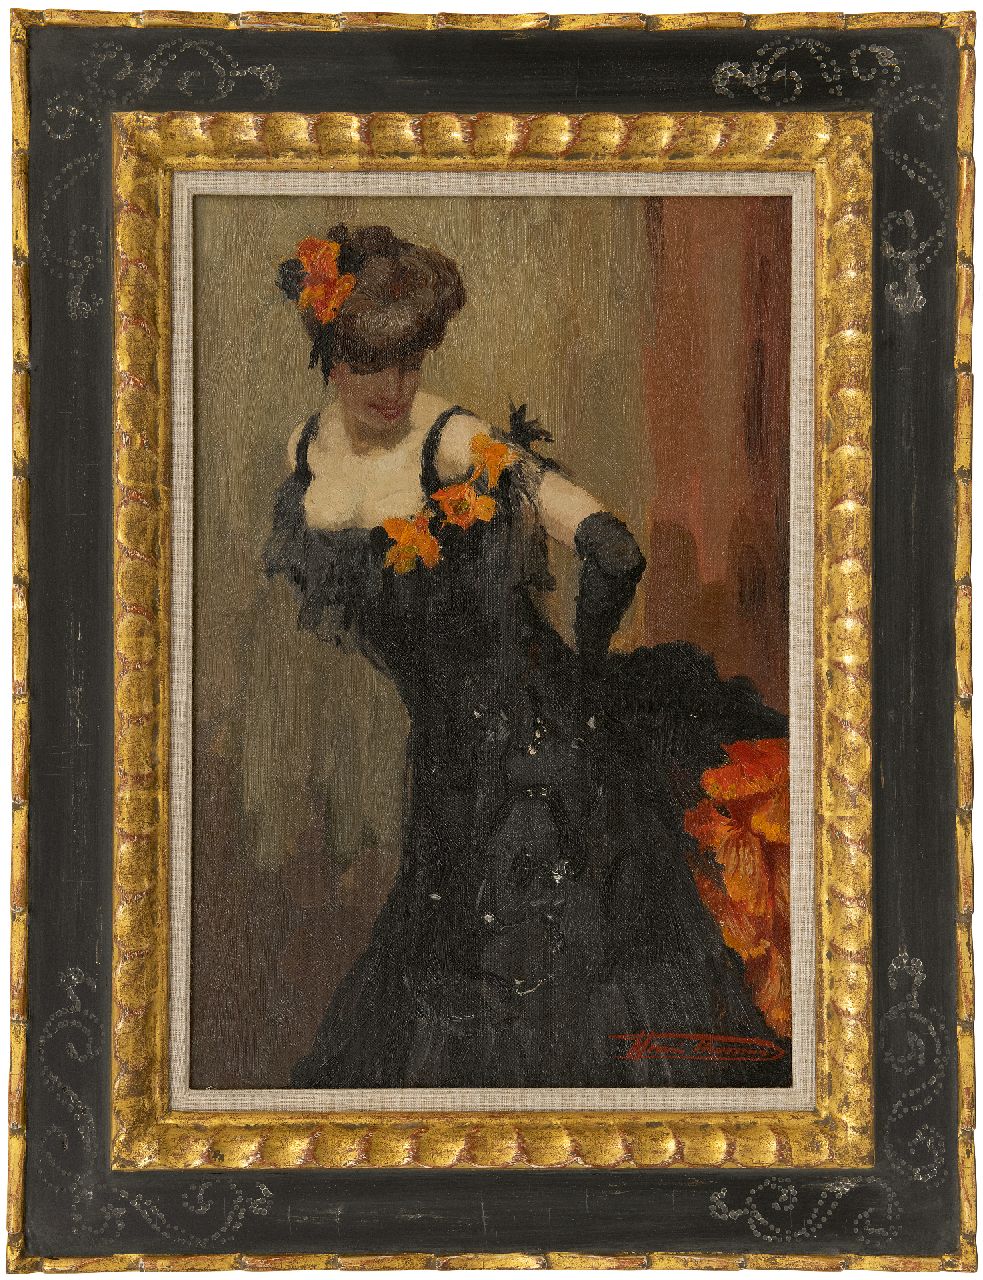 Thomas H.J.  | Henri Joseph Thomas | Schilderijen te koop aangeboden | Danseres in zwarte jurk, olieverf op doek 45,3 x 30,3 cm, gesigneerd rechtsonder